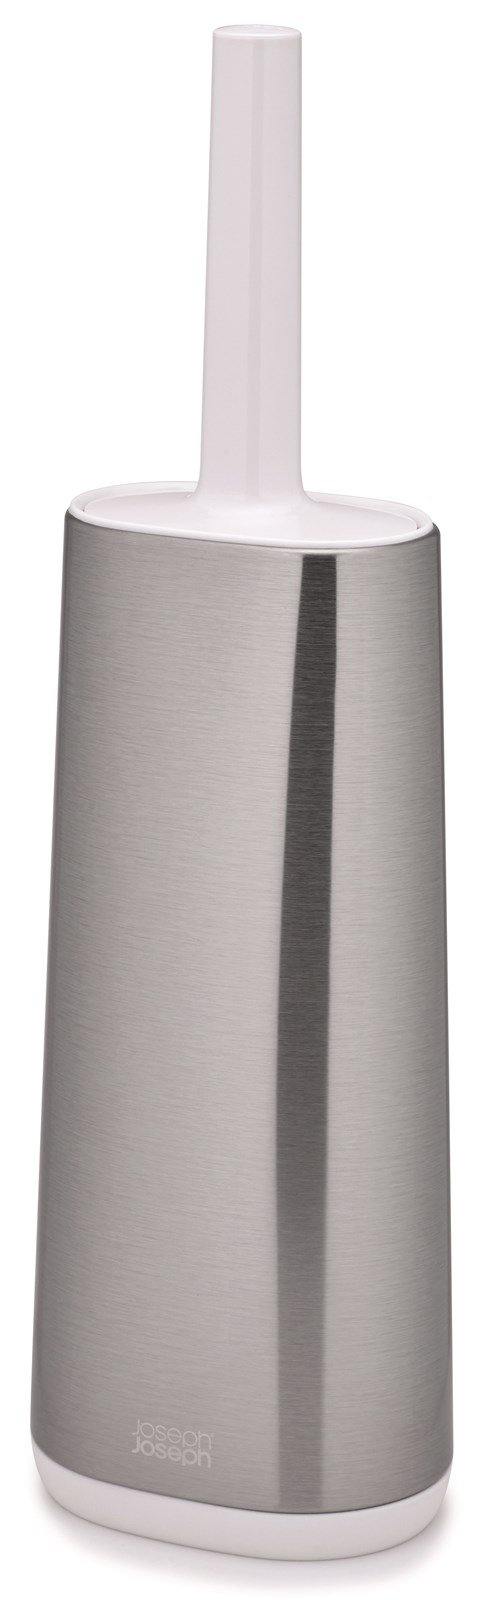 Flex Steel Toilettenbürste weiss/grau, 8.9x12.5x42.8 cm - MyLiving24